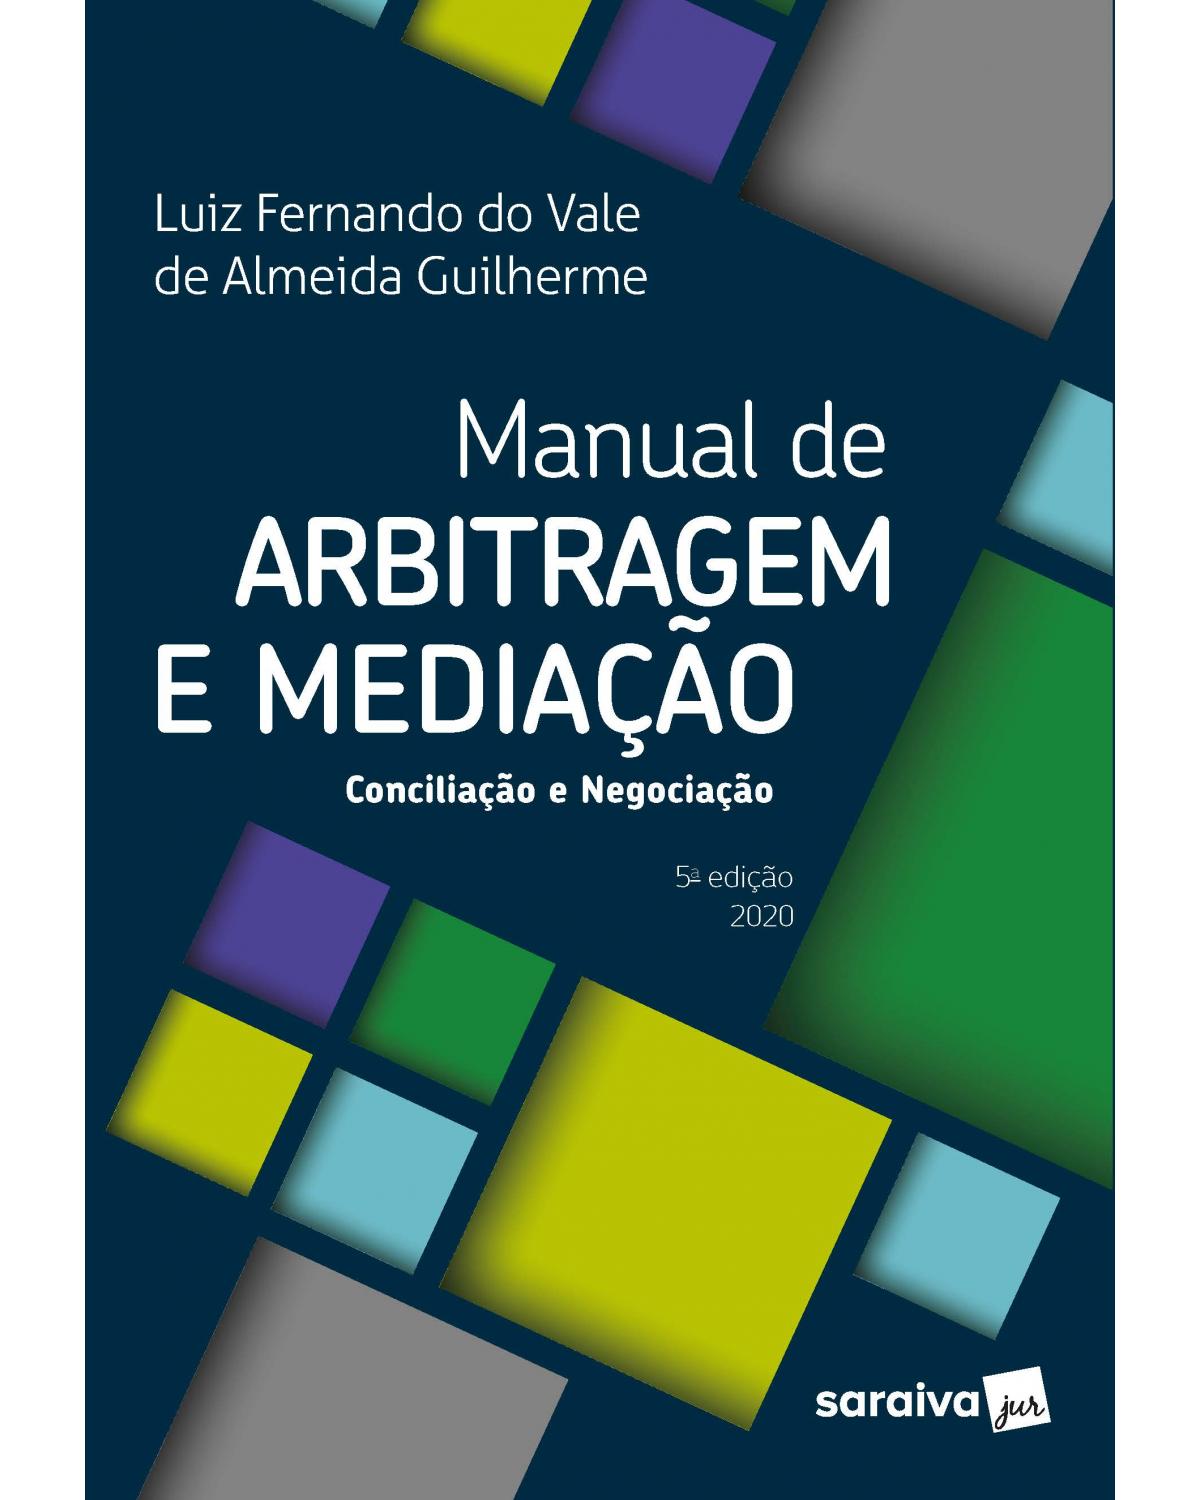 Manual de arbitragem e mediação - conciliação e negociação - 5ª Edição | 2020